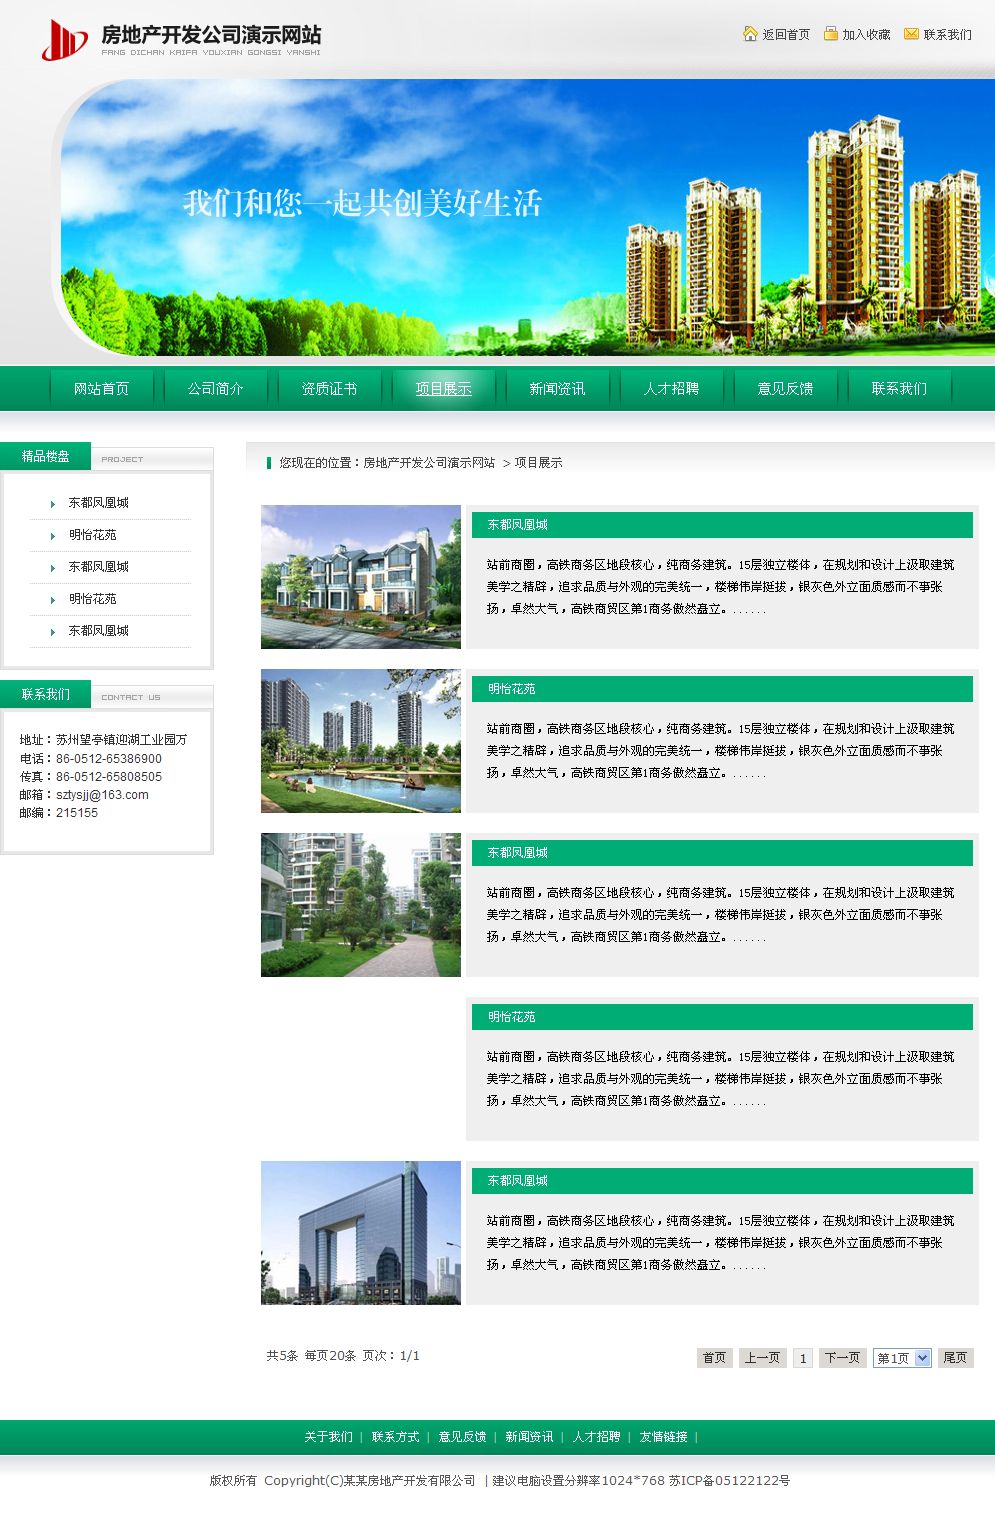 房地产开发公司网站产品列表页